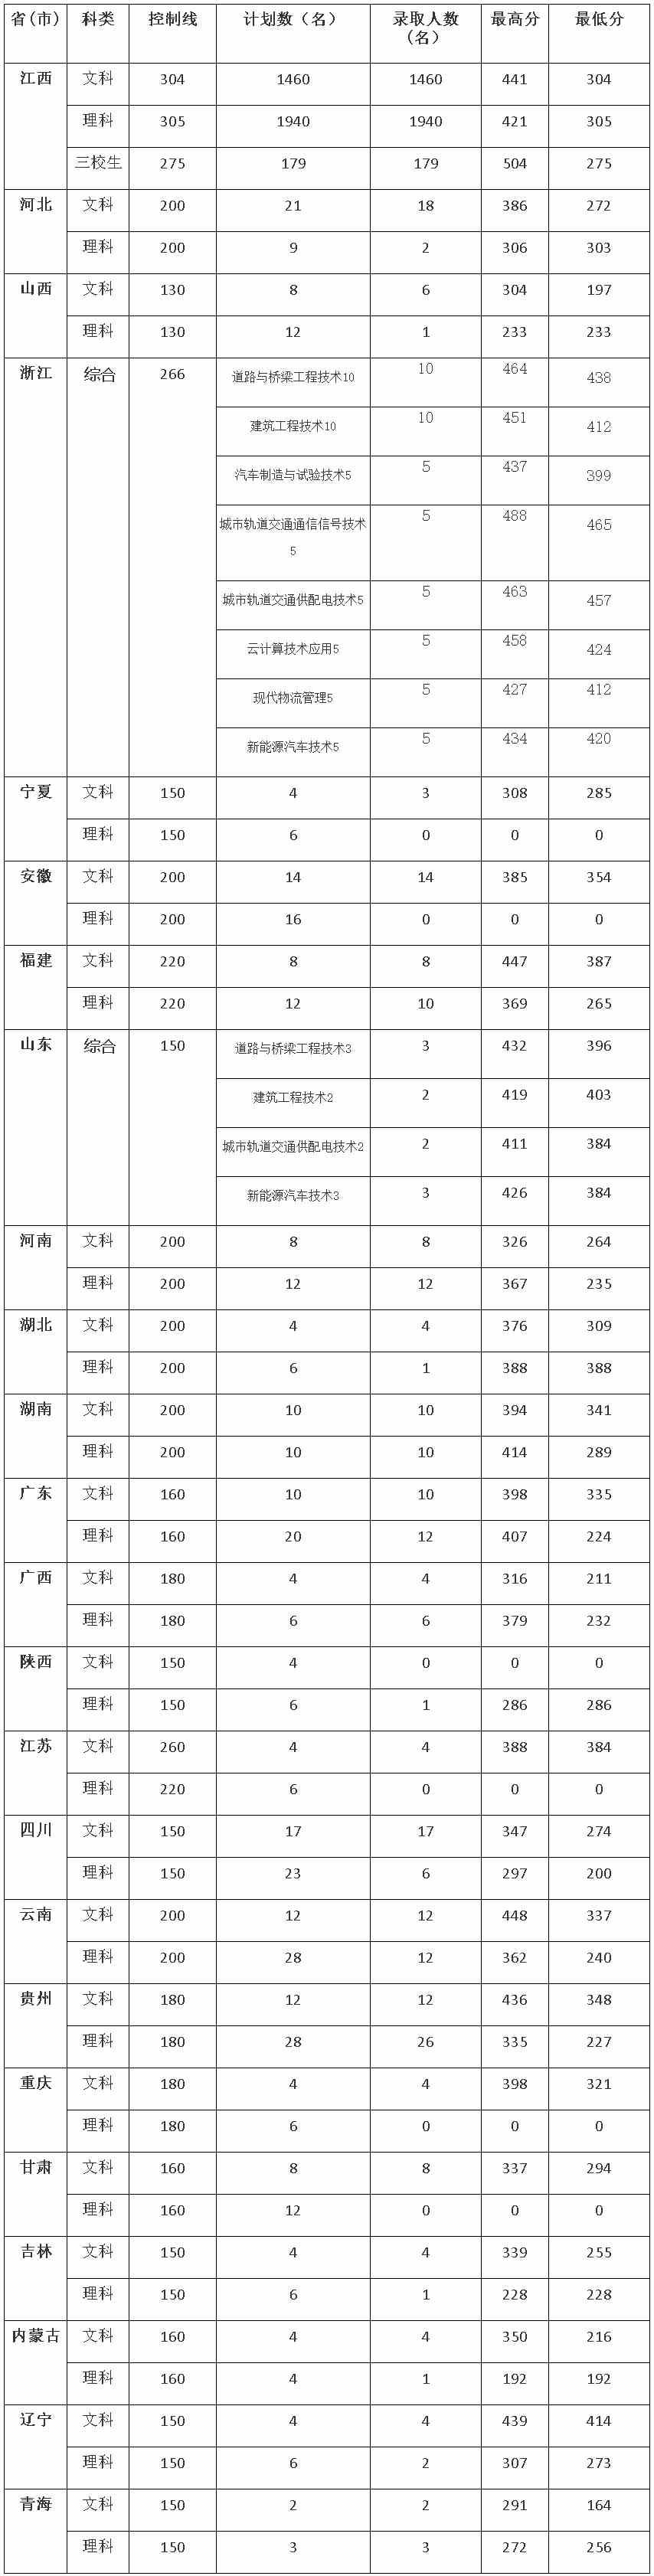 江西交通职业技术学院2021年各省高招录取情况.jpg